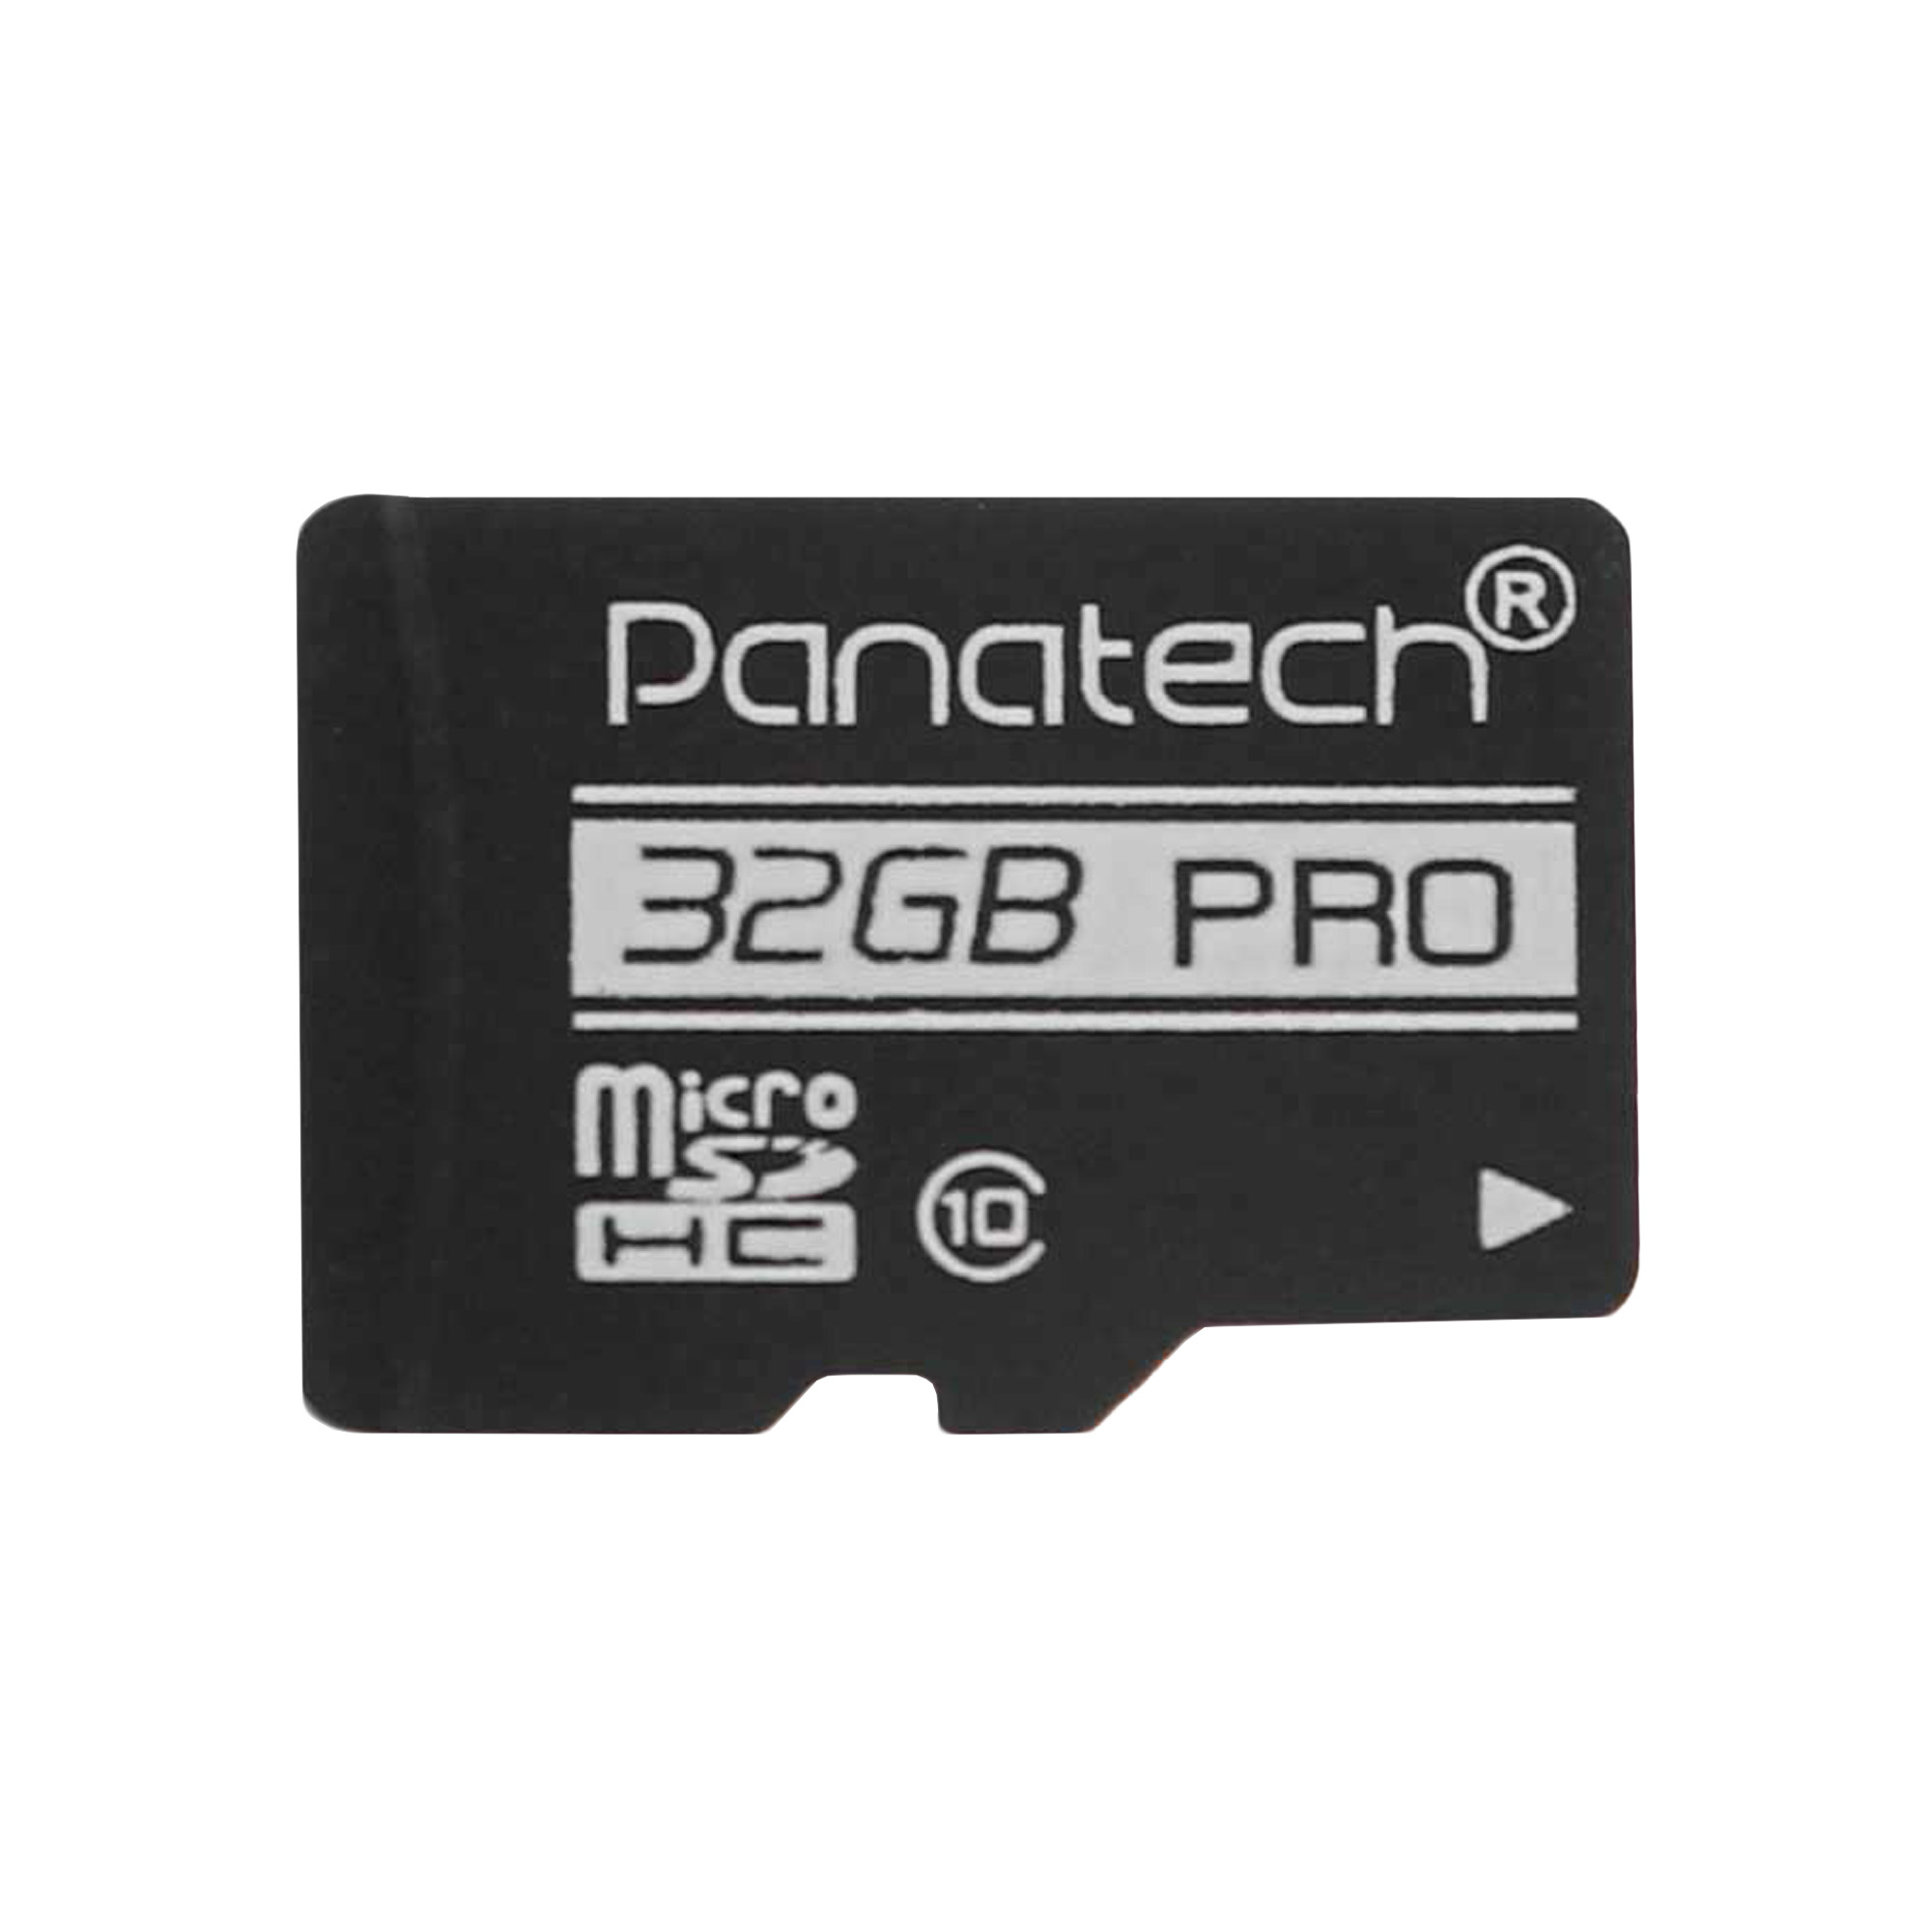 کارت حافظه microSDHC پاناتک مدل bk کلاس 10 استاندارد UHS-I سرعت 30MBps ظرفیت 32 گیگابایت بسته 5 عددی